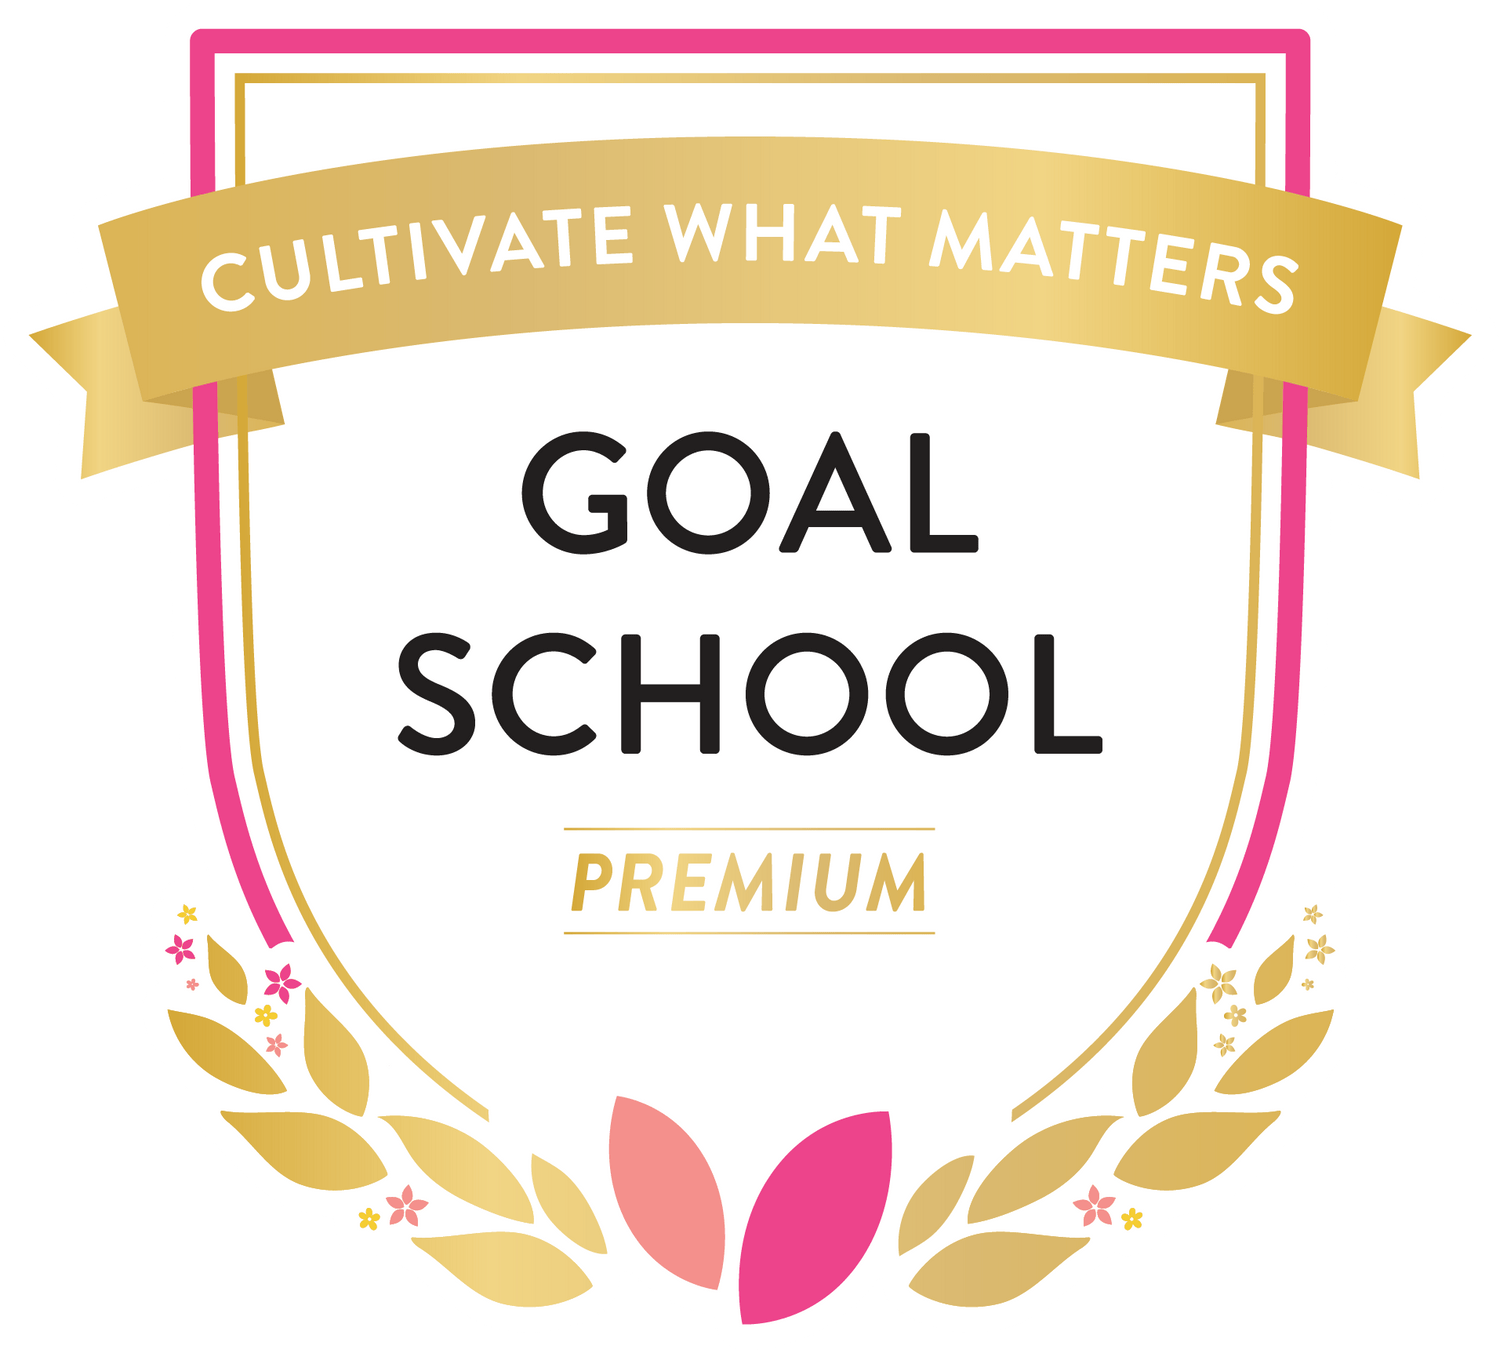 Goal School Premium Logo@2x-8.png__PID:cc199ebb-ef30-415e-aac6-542bd9cfb764